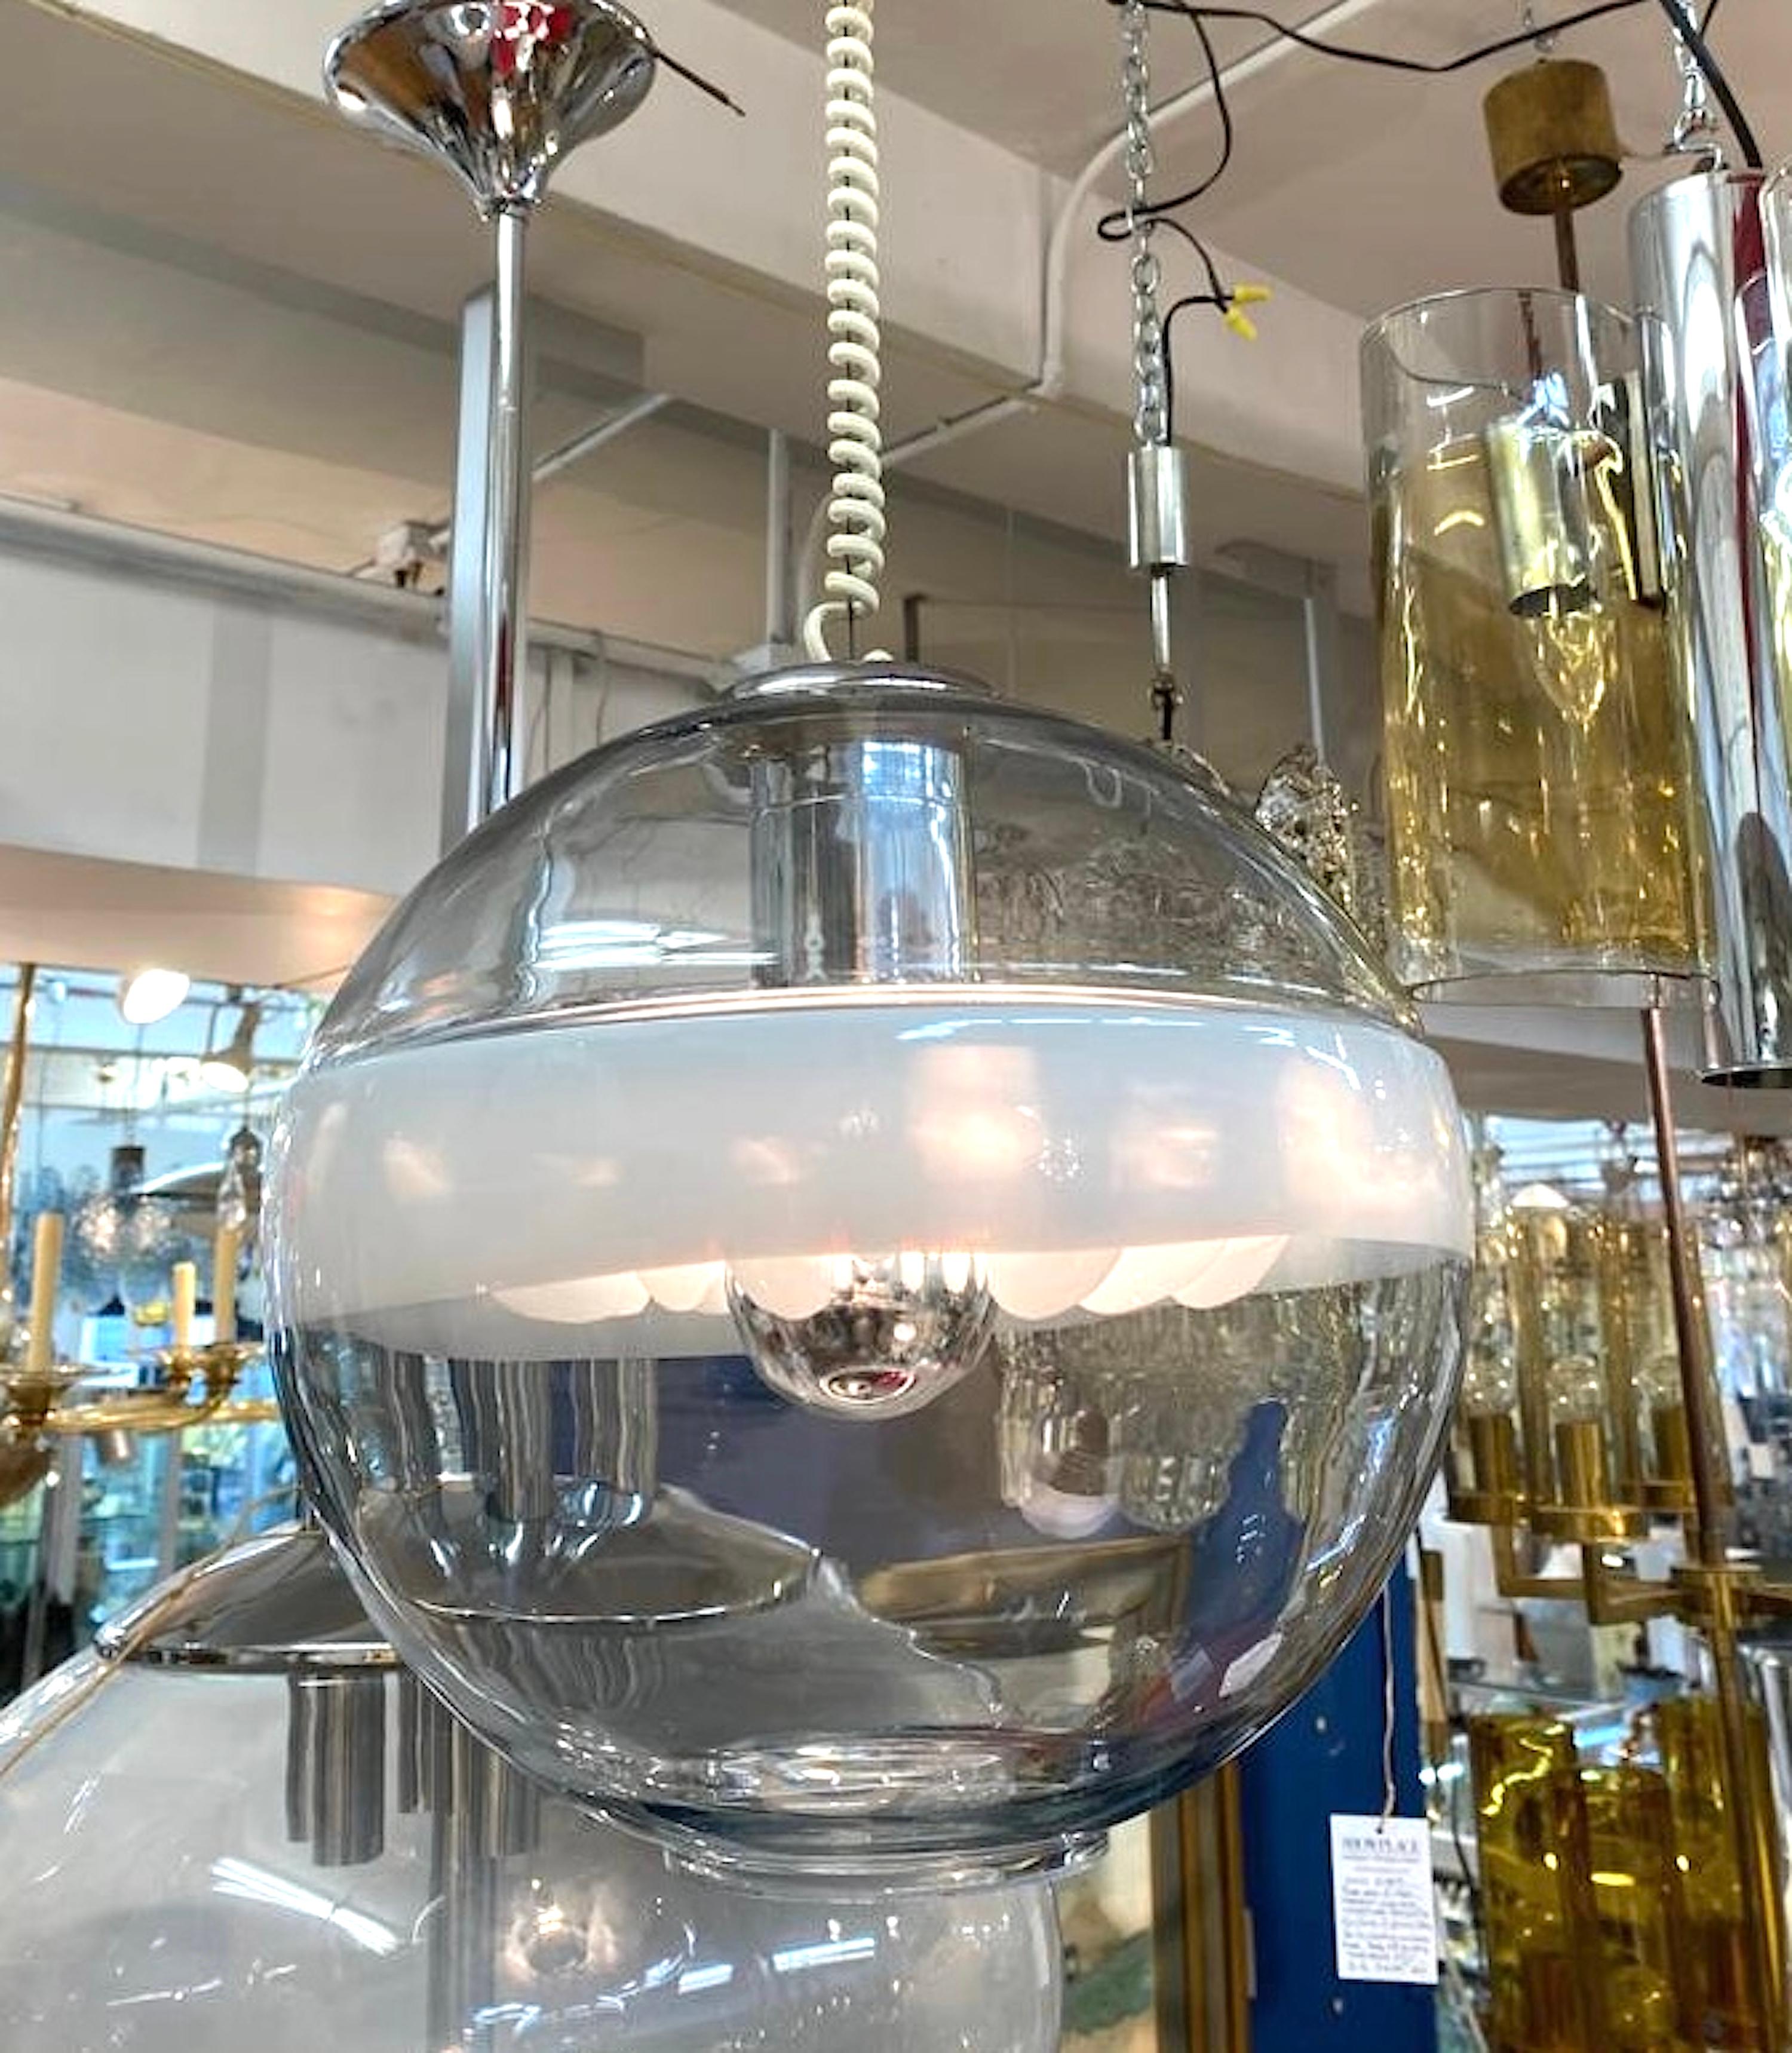 Suspension sculpturale en verre des années 1970 provenant de Murano et réalisée par la société italienne d'éclairage Sothis. L'abat-jour globe est soufflé à la main en verre clair et blanc. Le globe est entouré d'une large bande blanche où se trouve